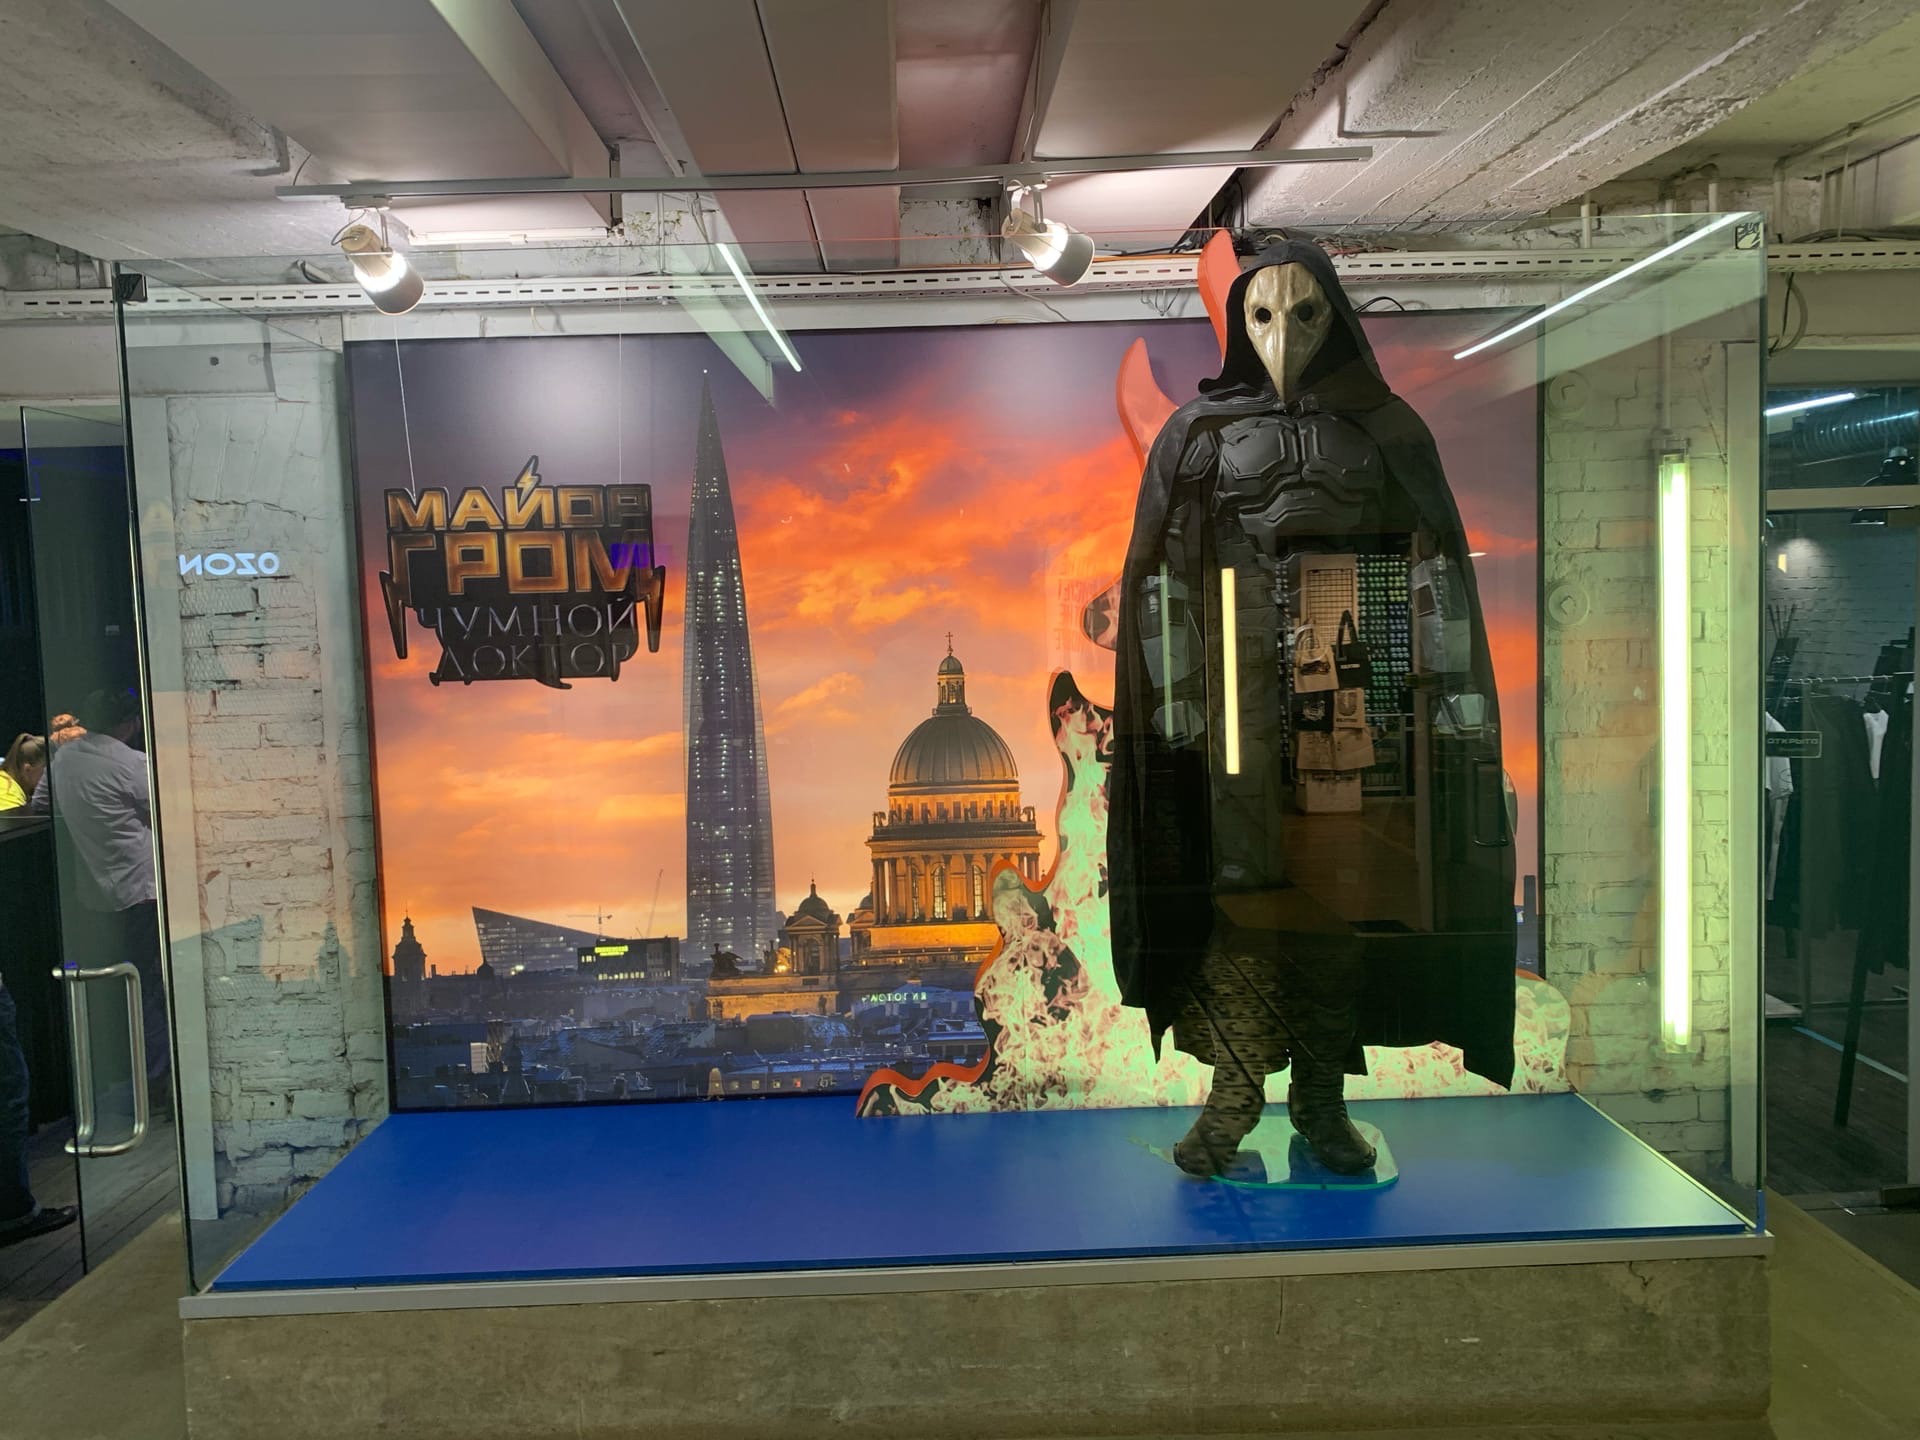 Открытие магазина BUBBLE в Москве и тизер сиквела «Майора Грома: Чумной доктор»